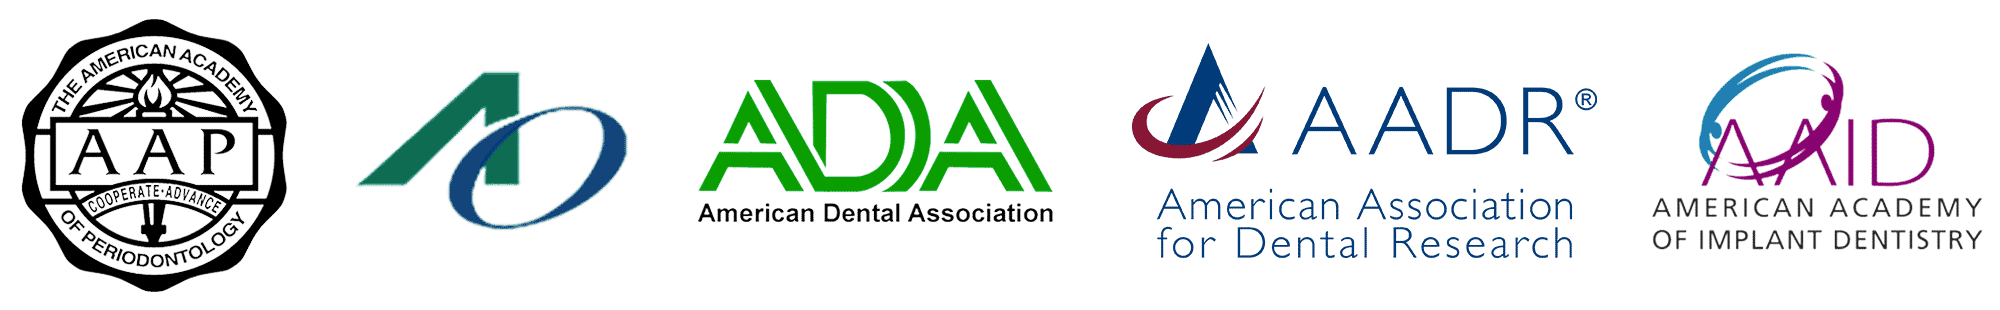 Dental Association Logos